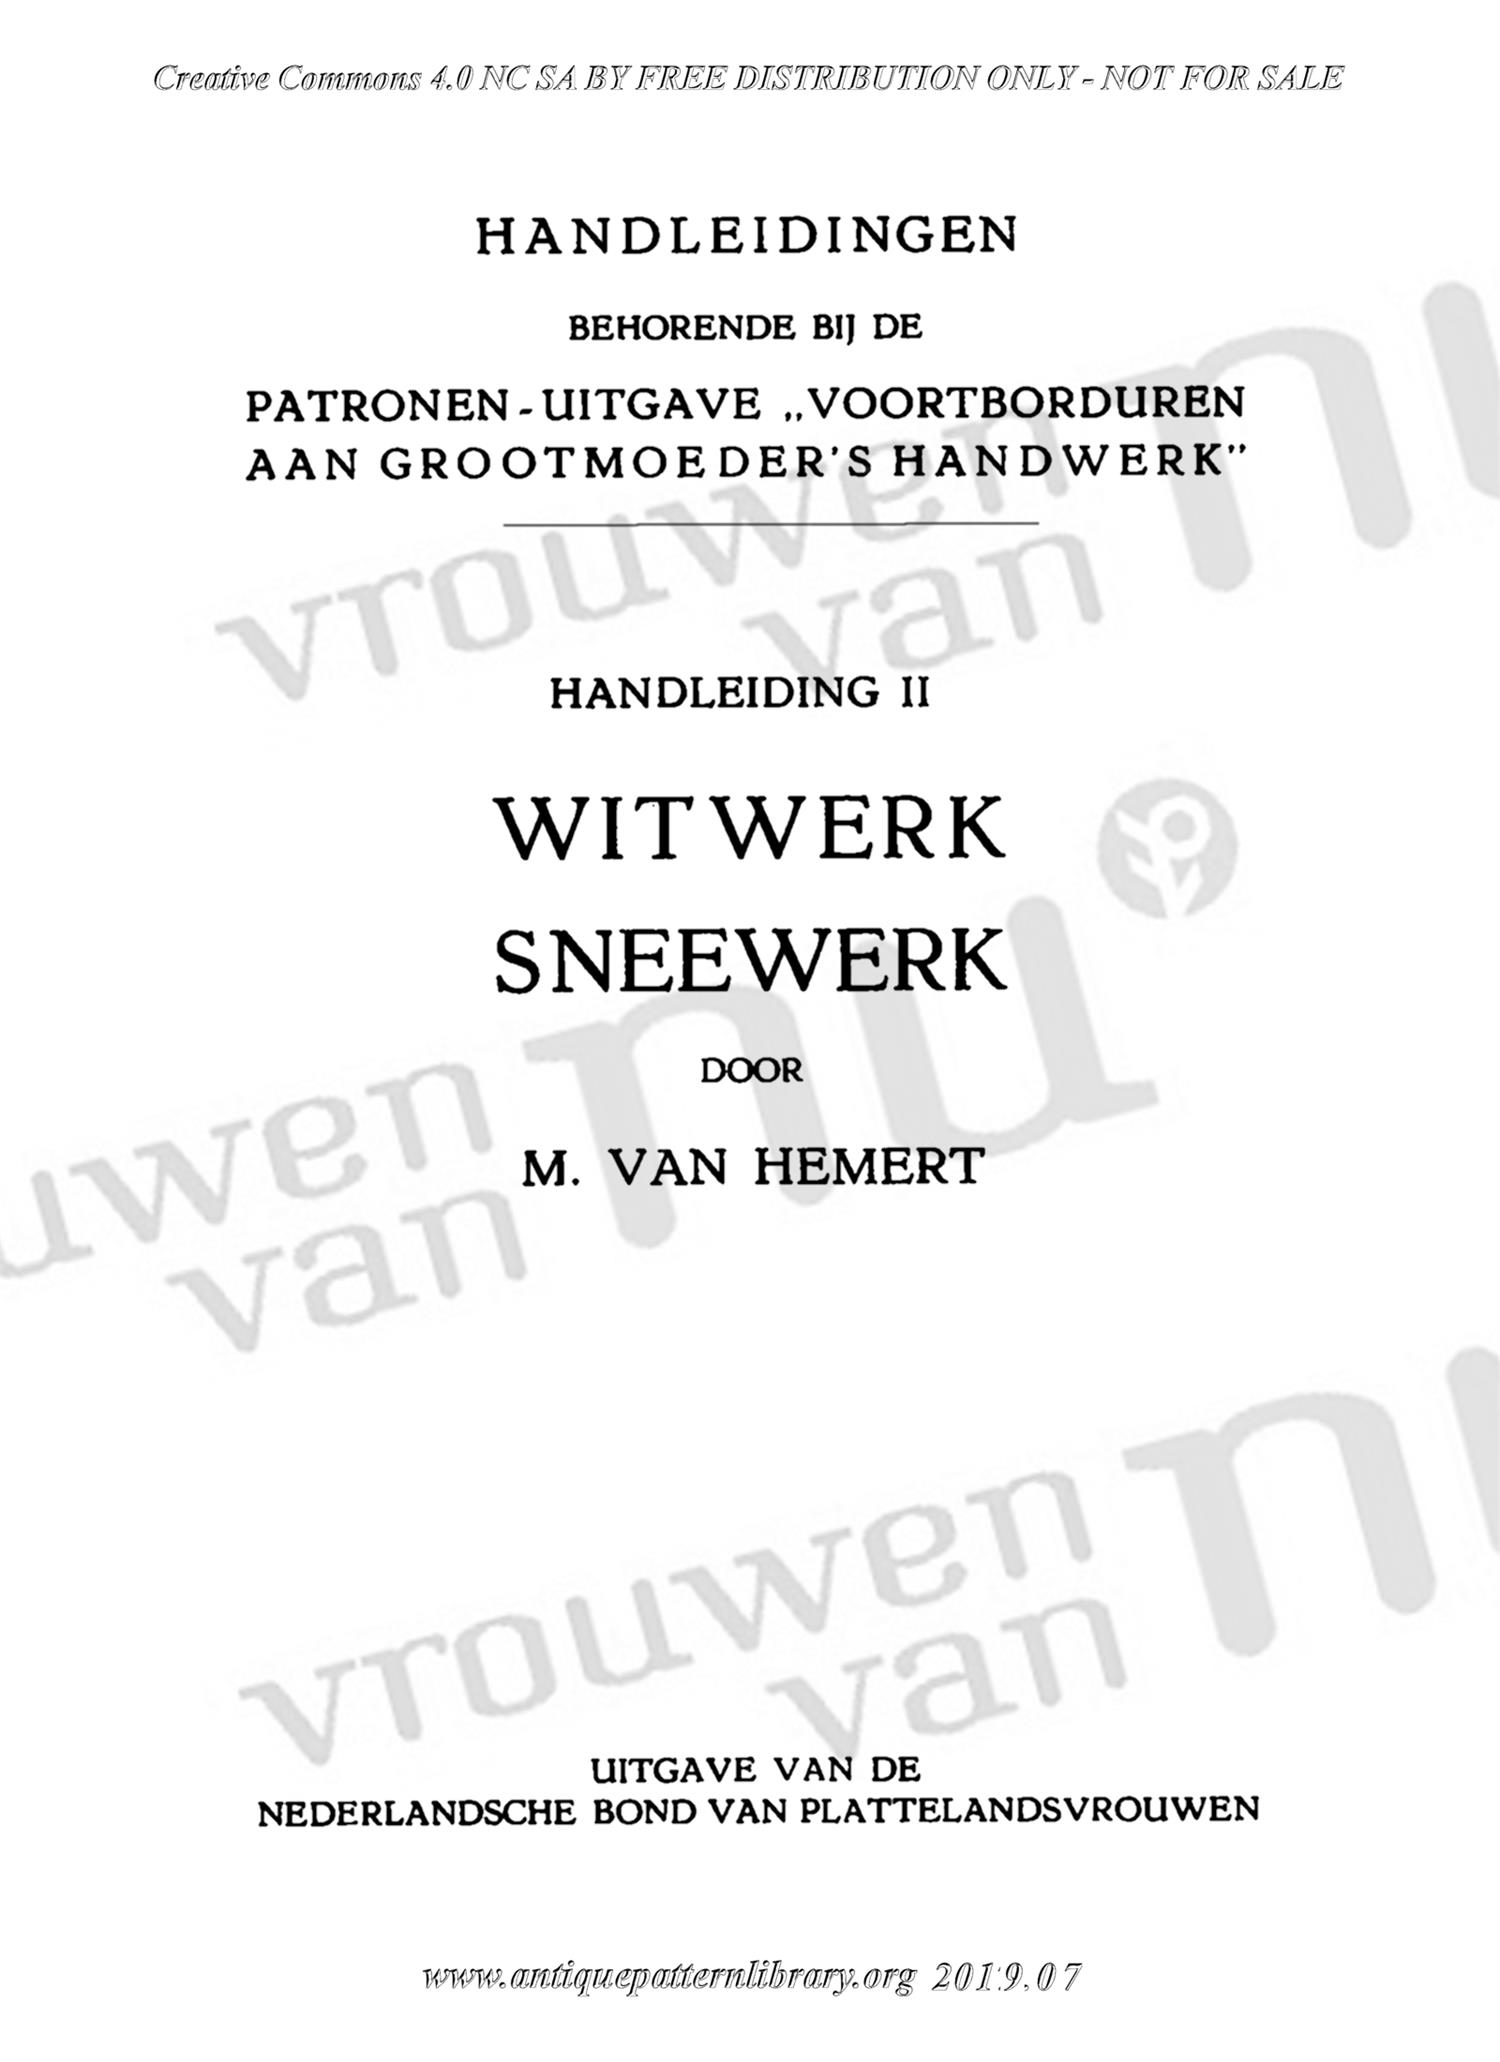 E-WM002 2. Witwerk Sneewerk